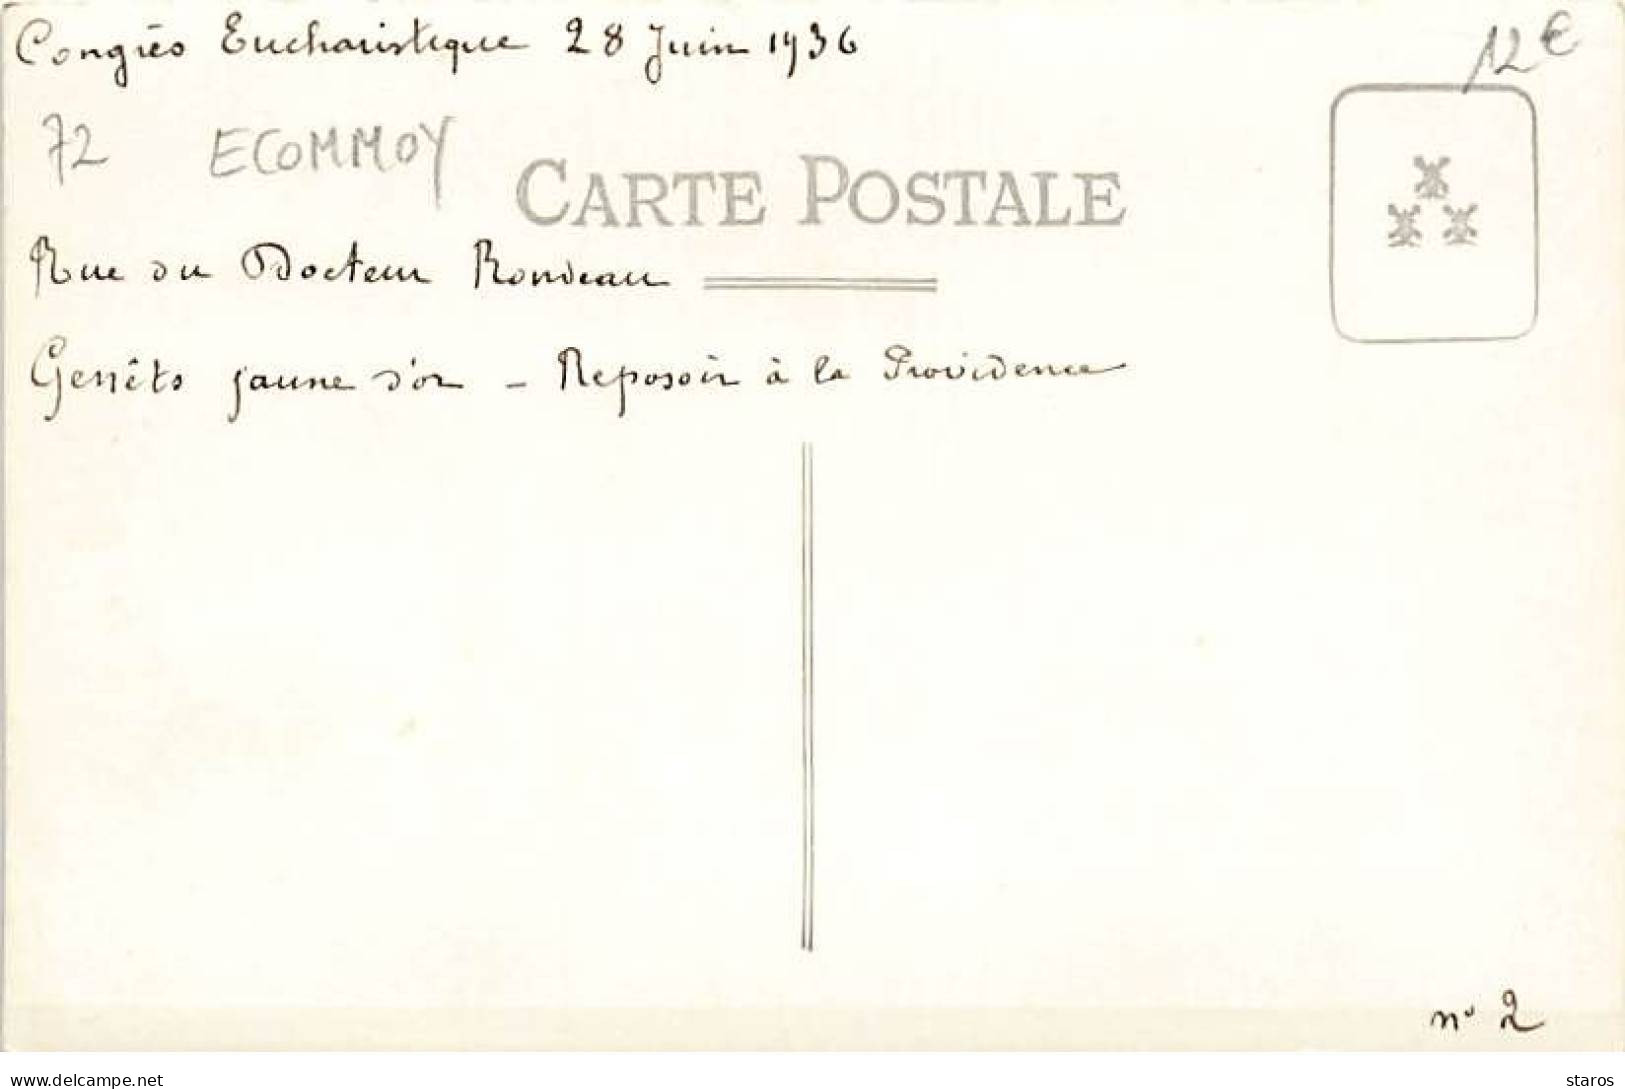 Carte-Photo - ECOMMOY - Congrès Eucharistique 1936 - Rue Docteur Rondeau - Genêts Jaune D'or - Ecommoy